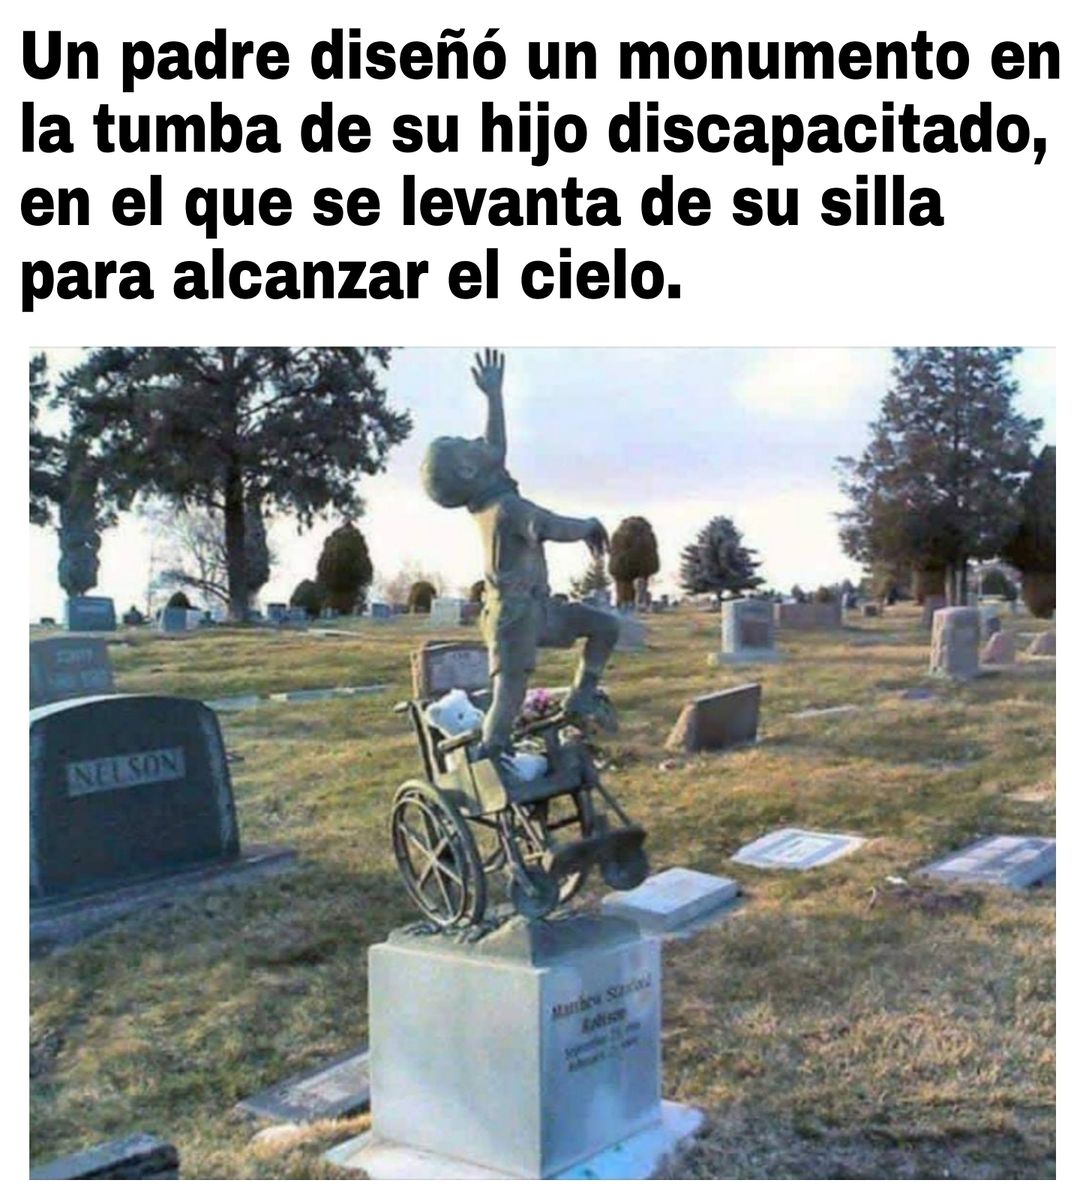 Un padre diseñó un monumento en la tumba de su hijo discapacitado, en el que se levanta de su silla para alcanzar el cielo.